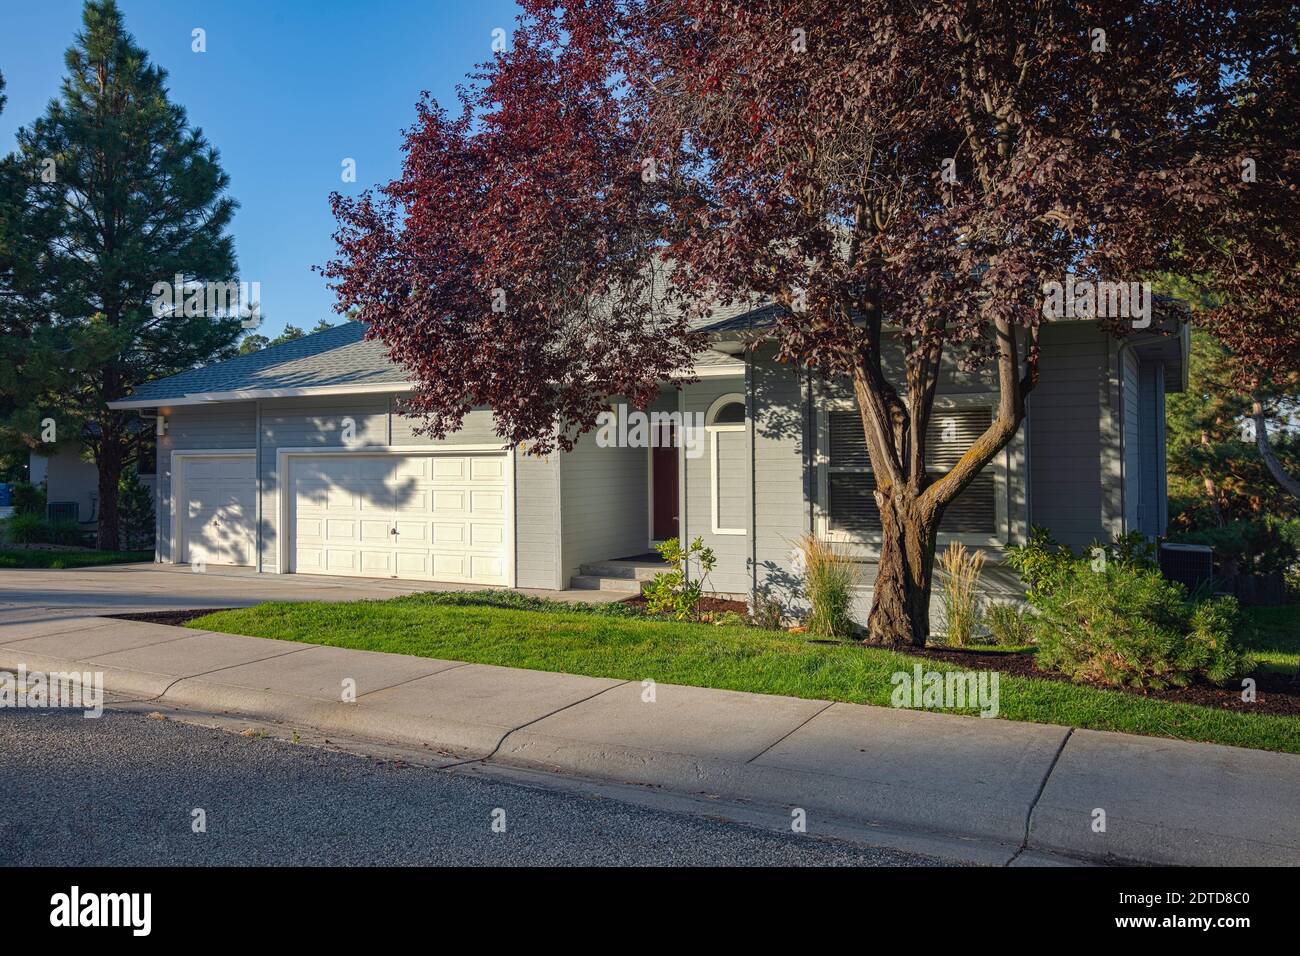 USA, Idaho, Boise, Exterior of single family home on sunny morning Stock Photo